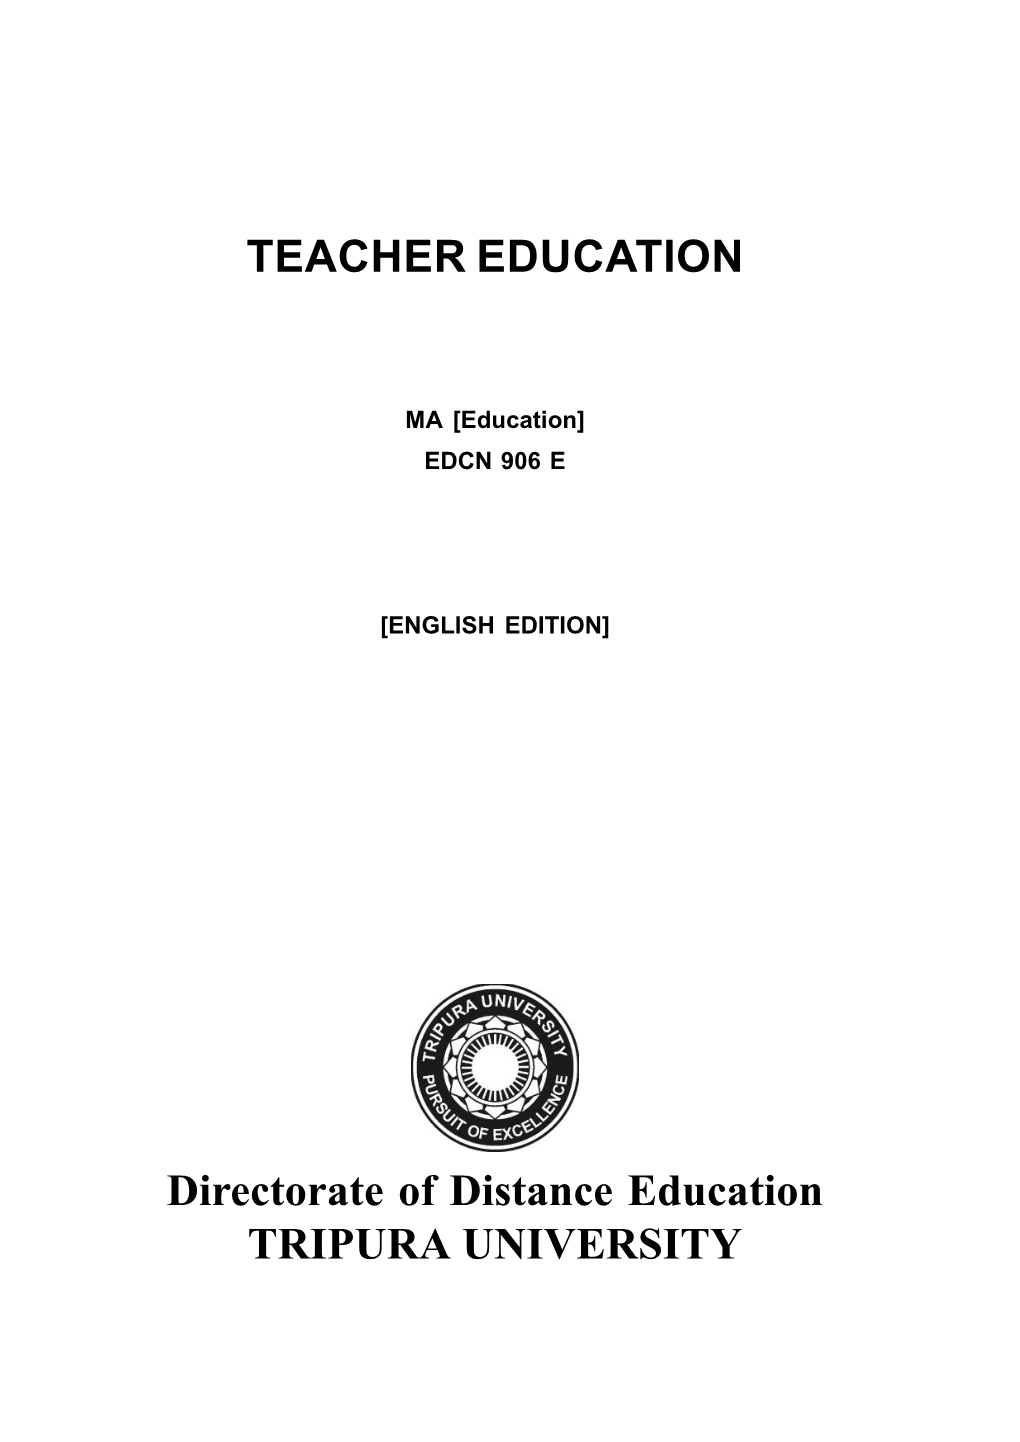 EDCN-906E-Teacher Education.Pdf